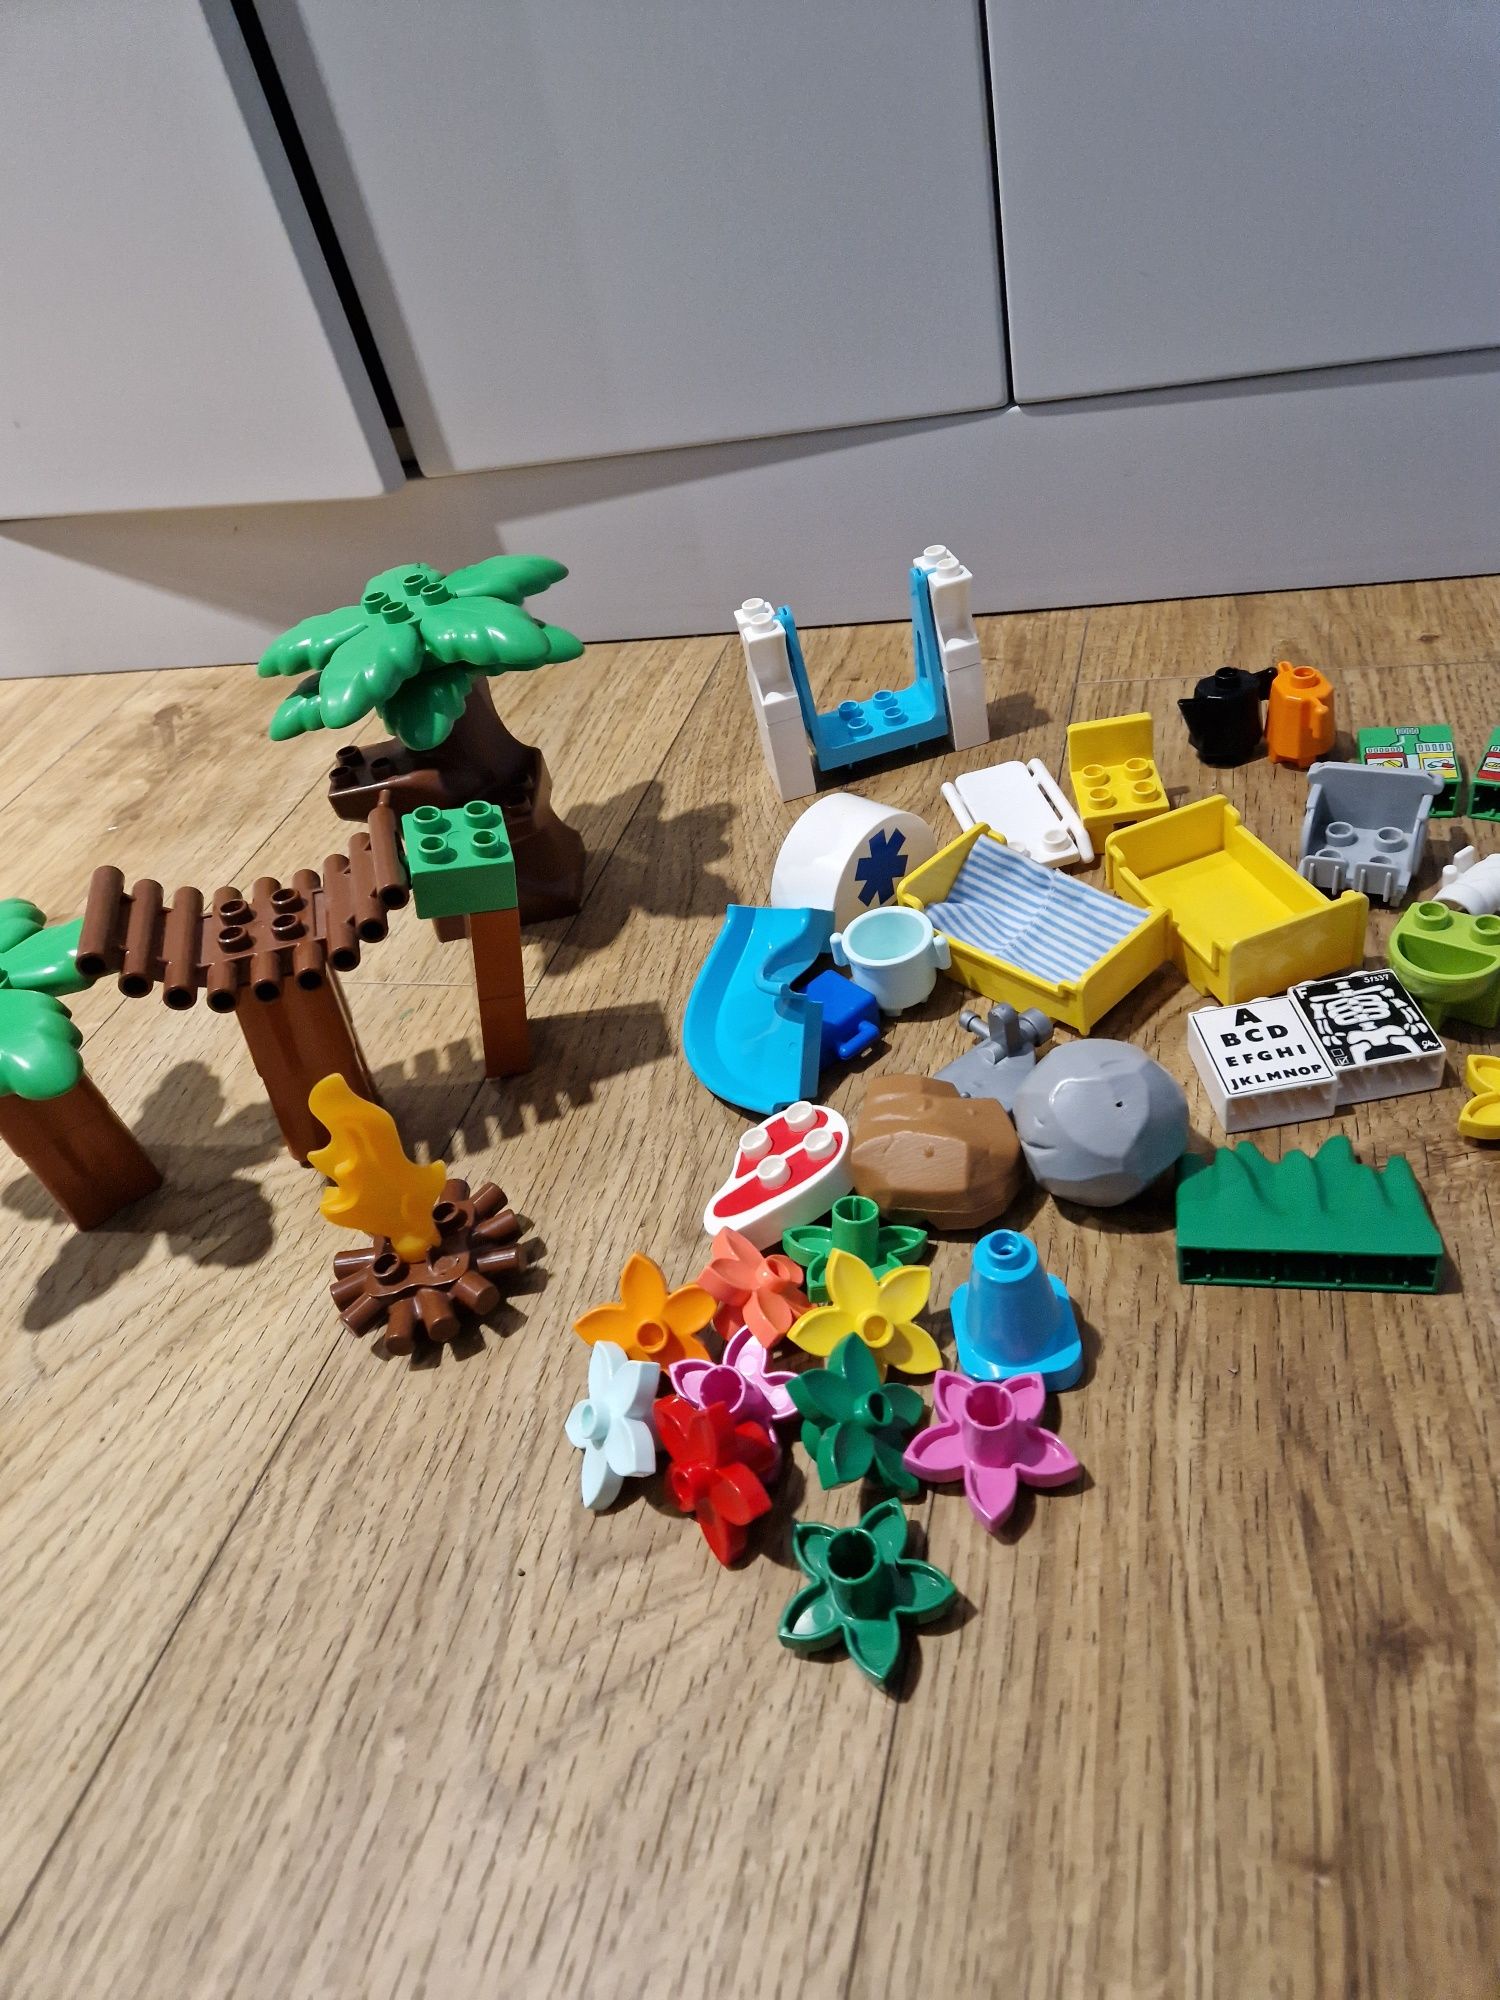 Ogromny zestaw LEGO, liczne postacie, szpital, zoo, kolejka